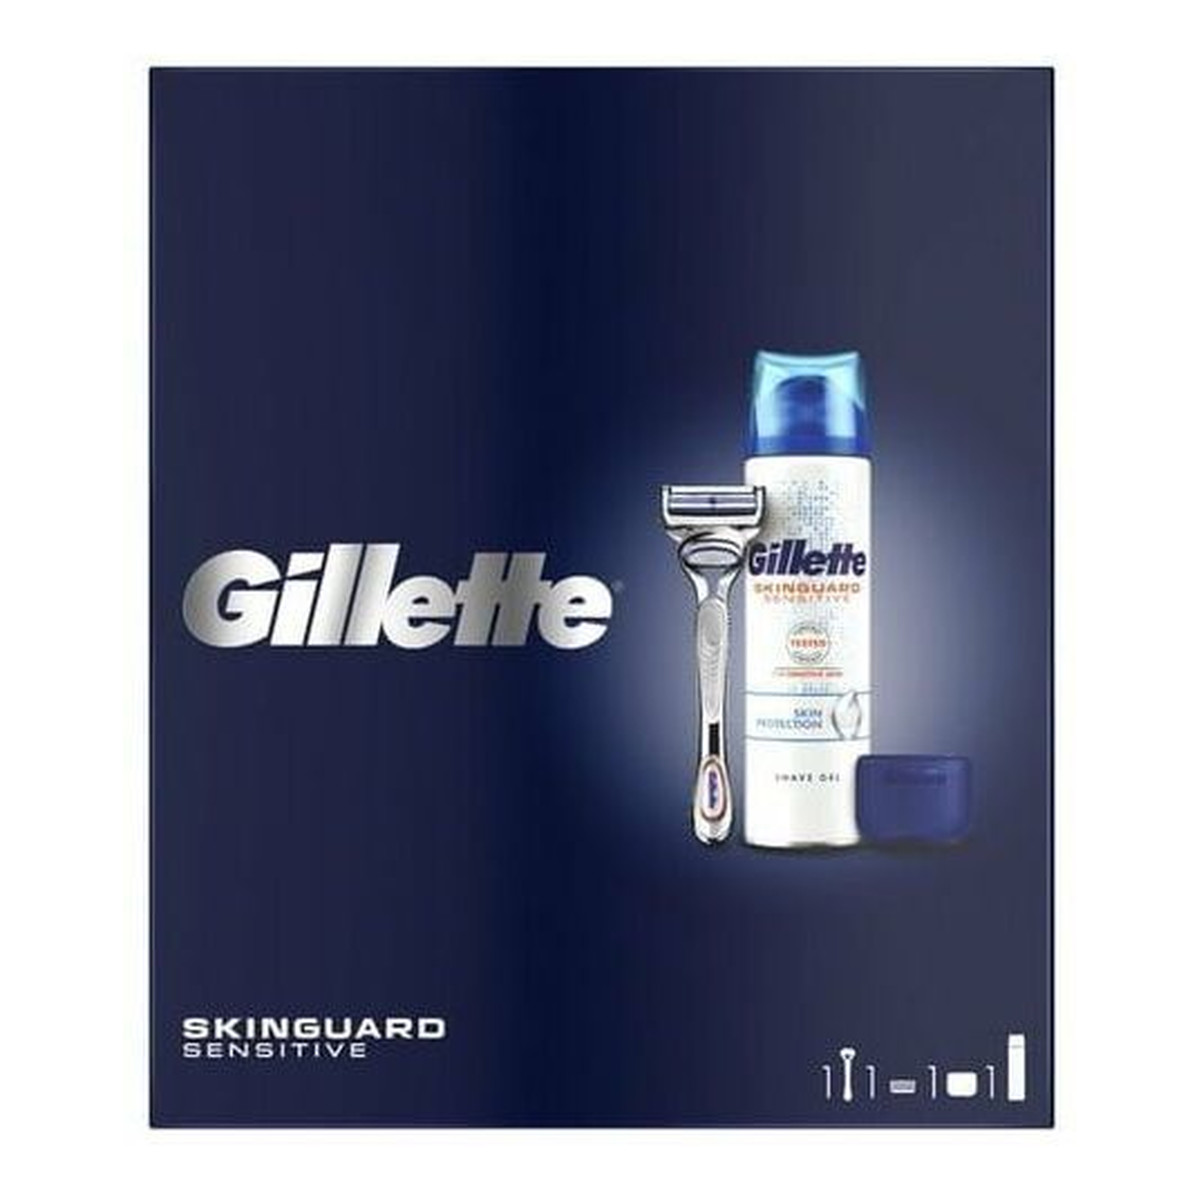 Gillette Zestaw prezentowy Maszynka Skinguard + żel Skinguard